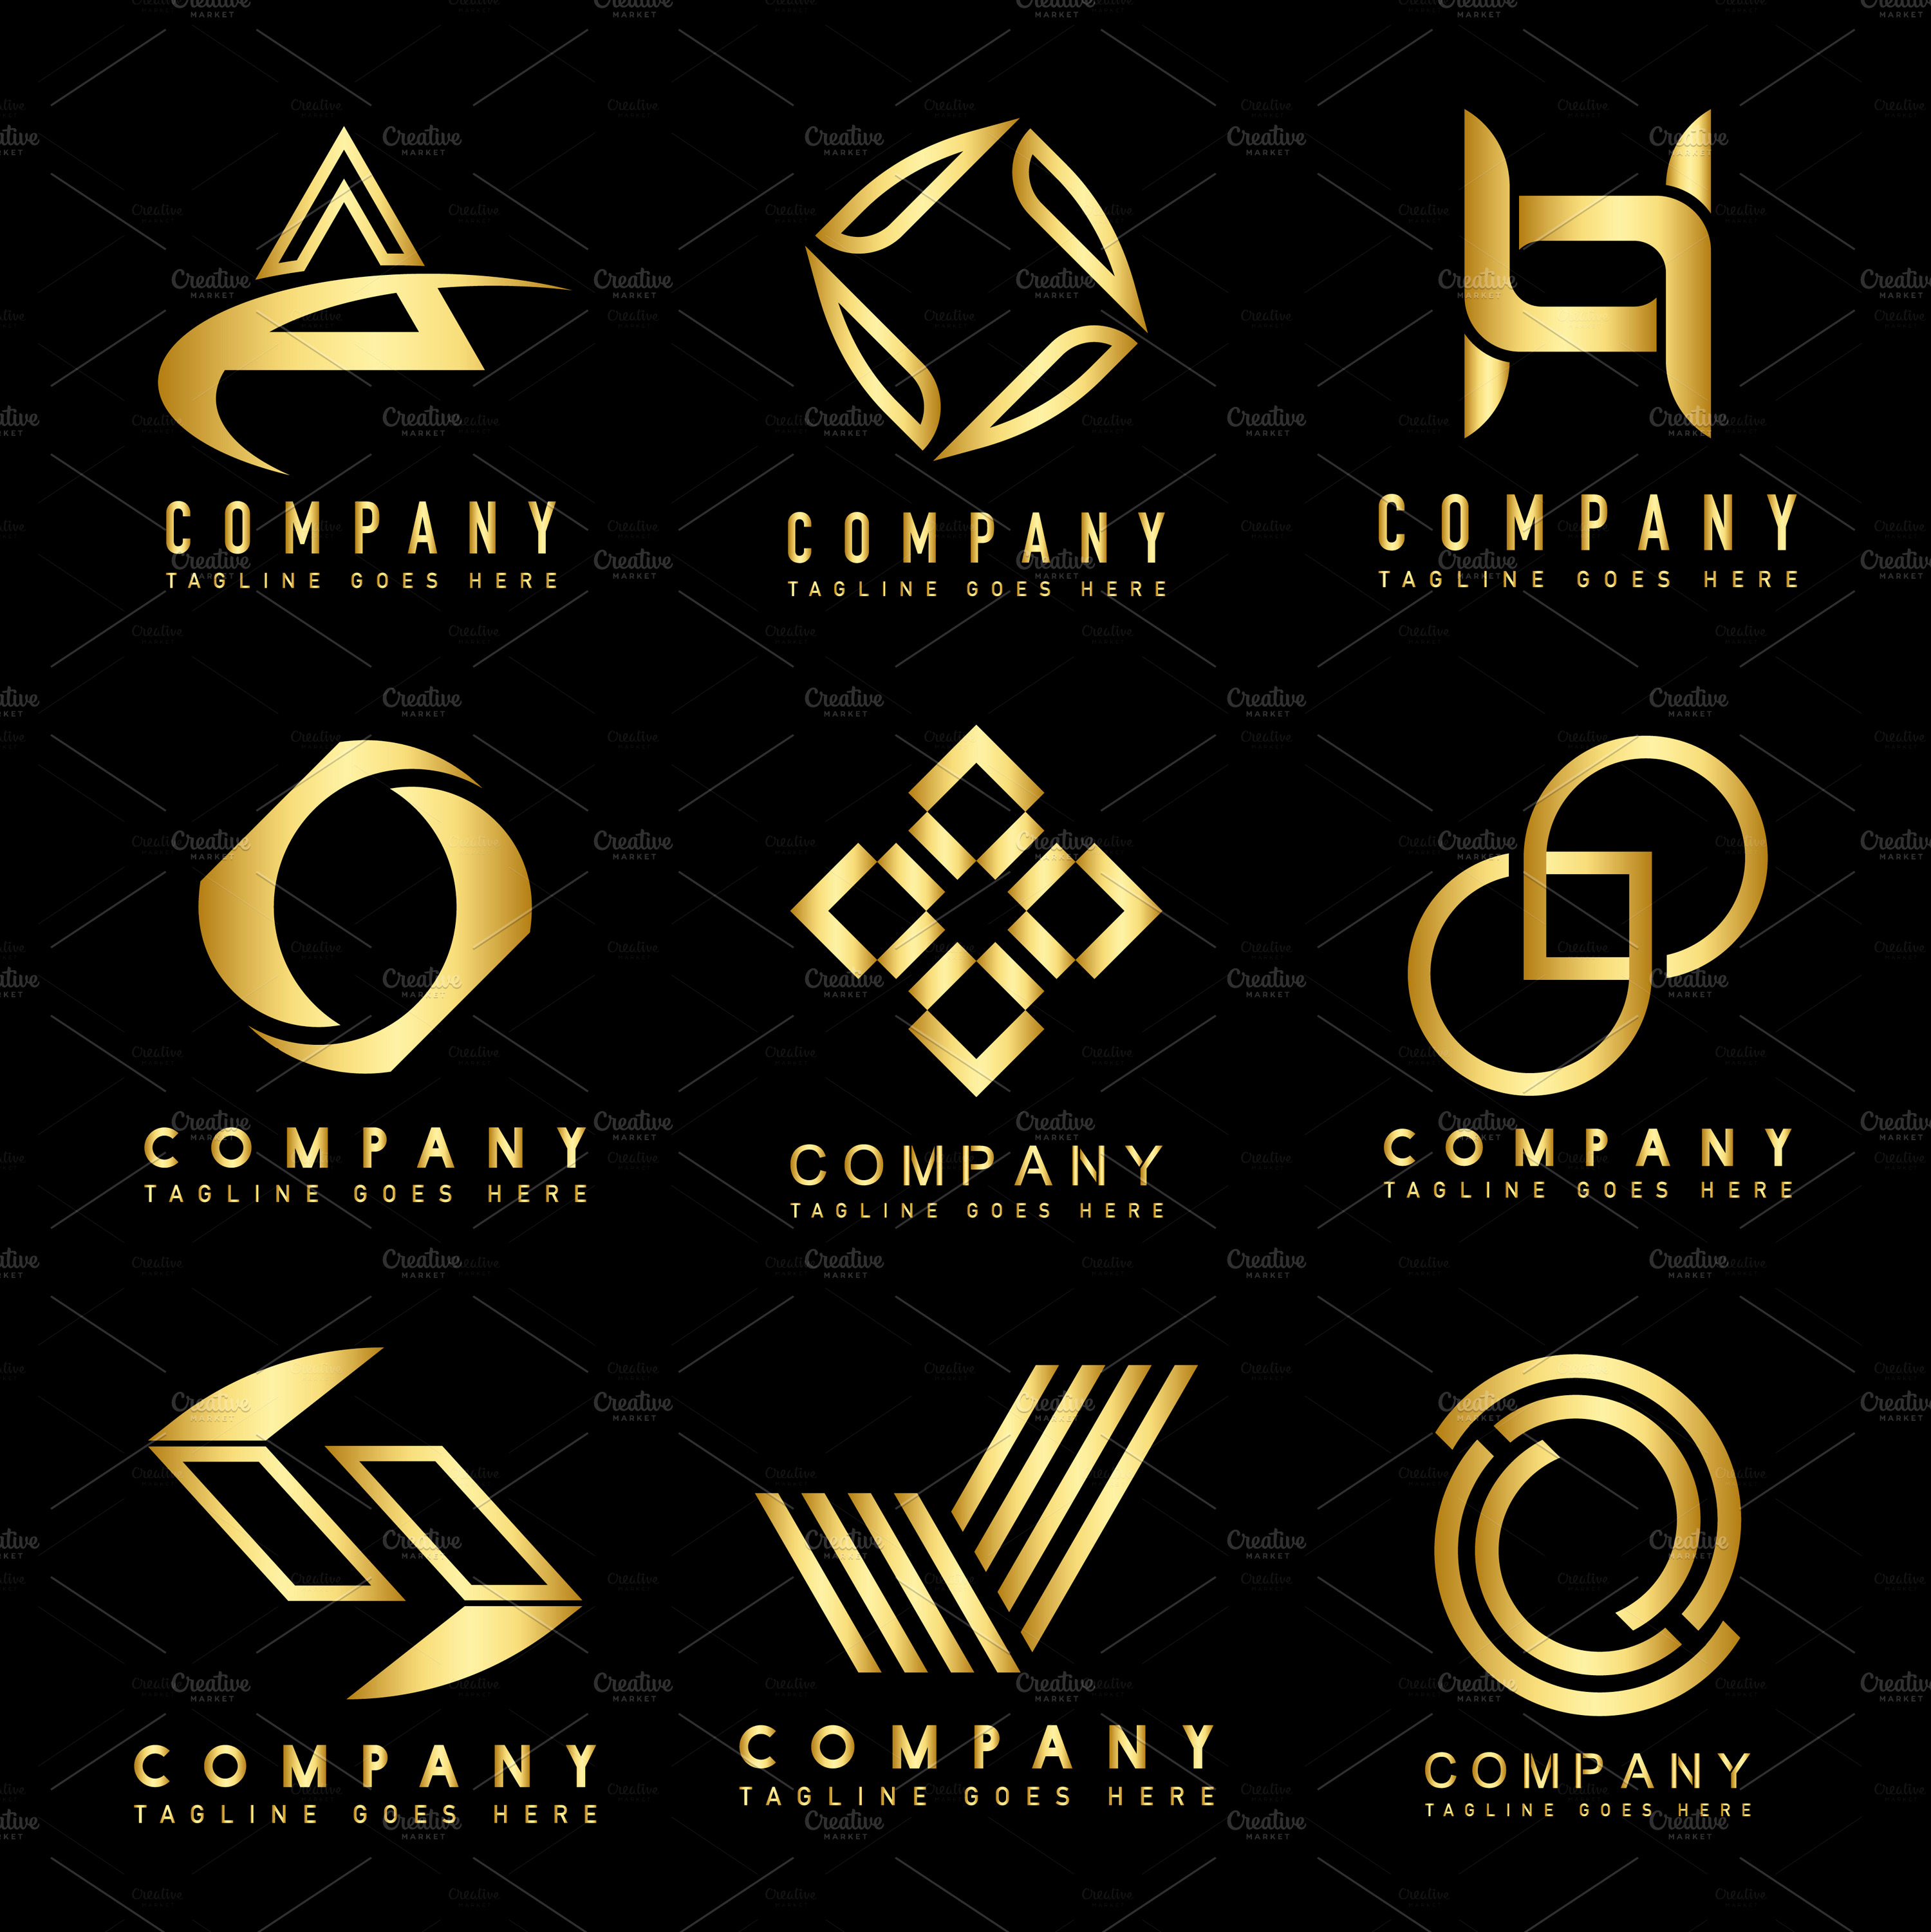 new-company-logo